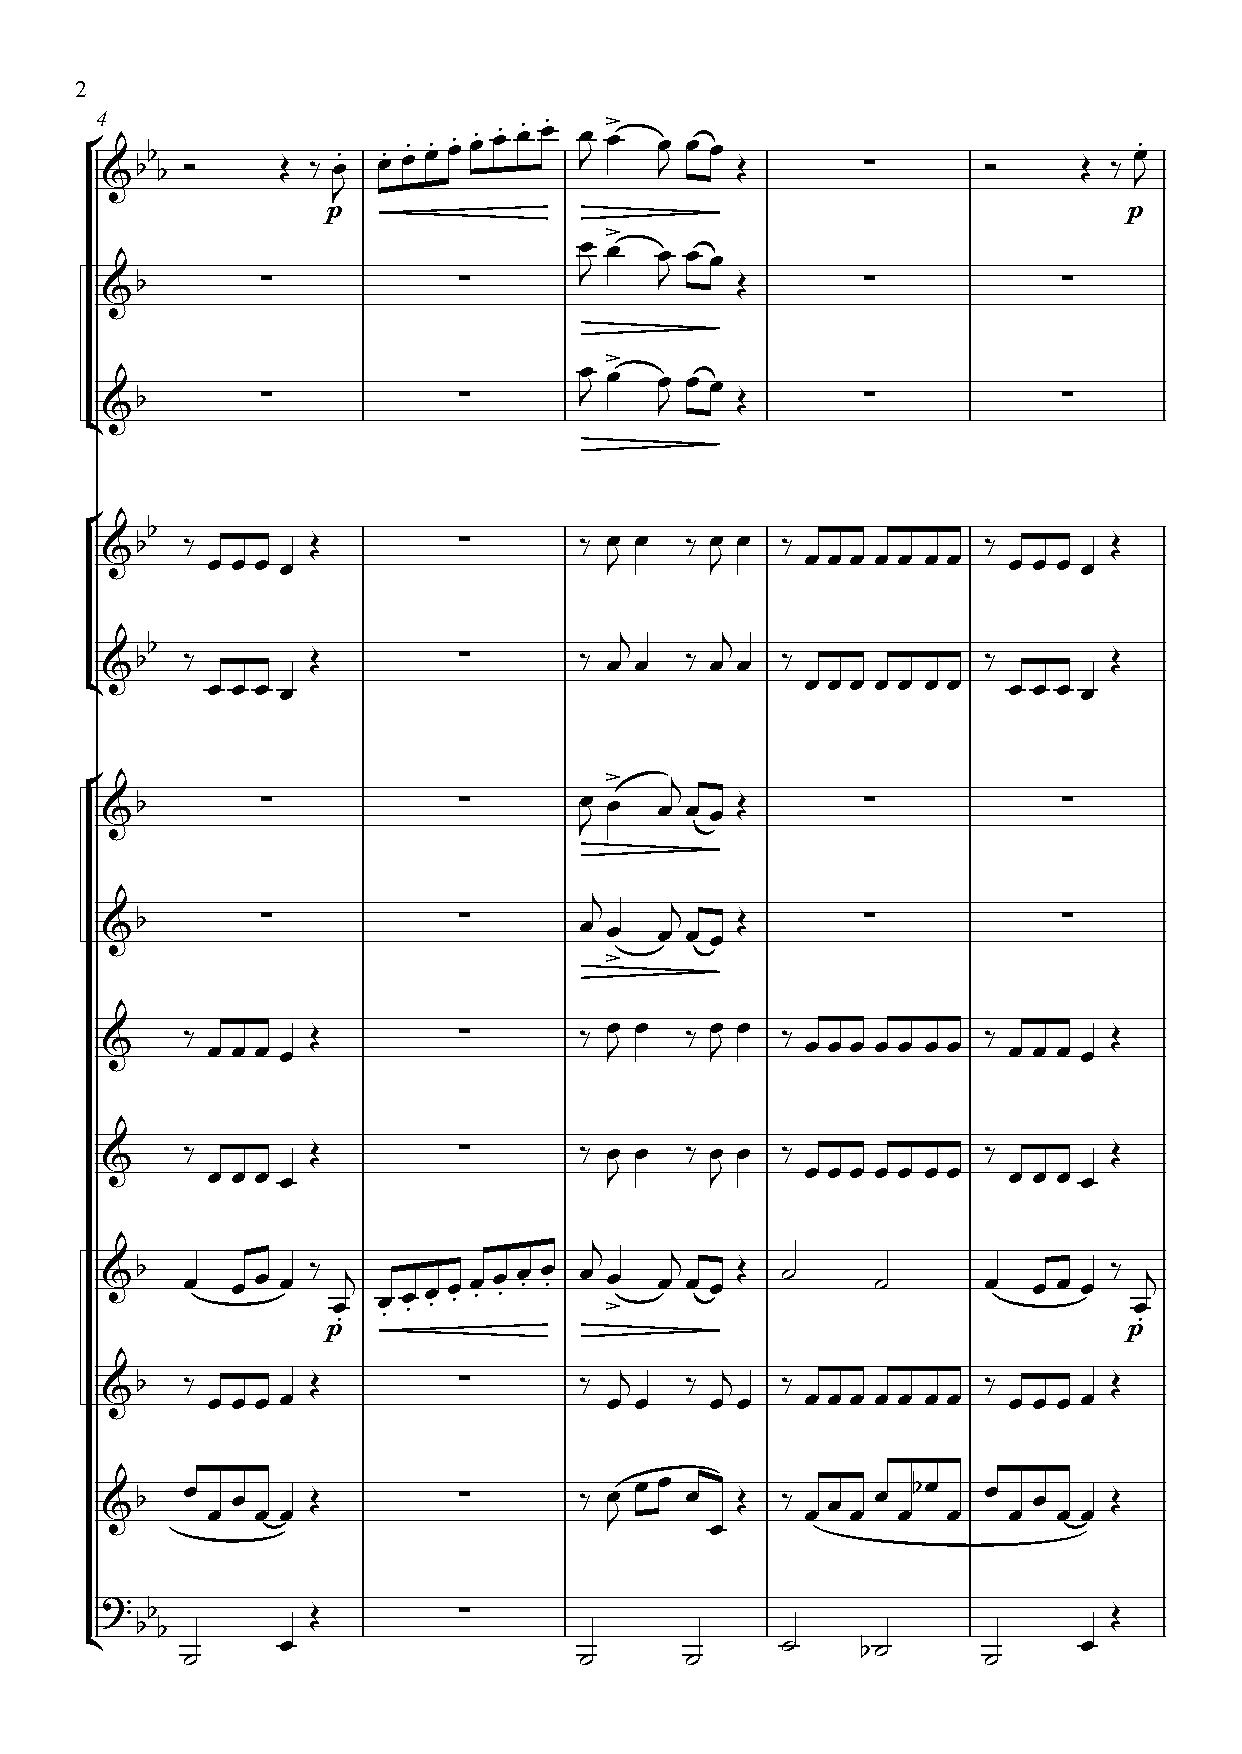 Сонатина В.Моцарт - партитура для духового оркестра, инструментовка Андриянова В.К.